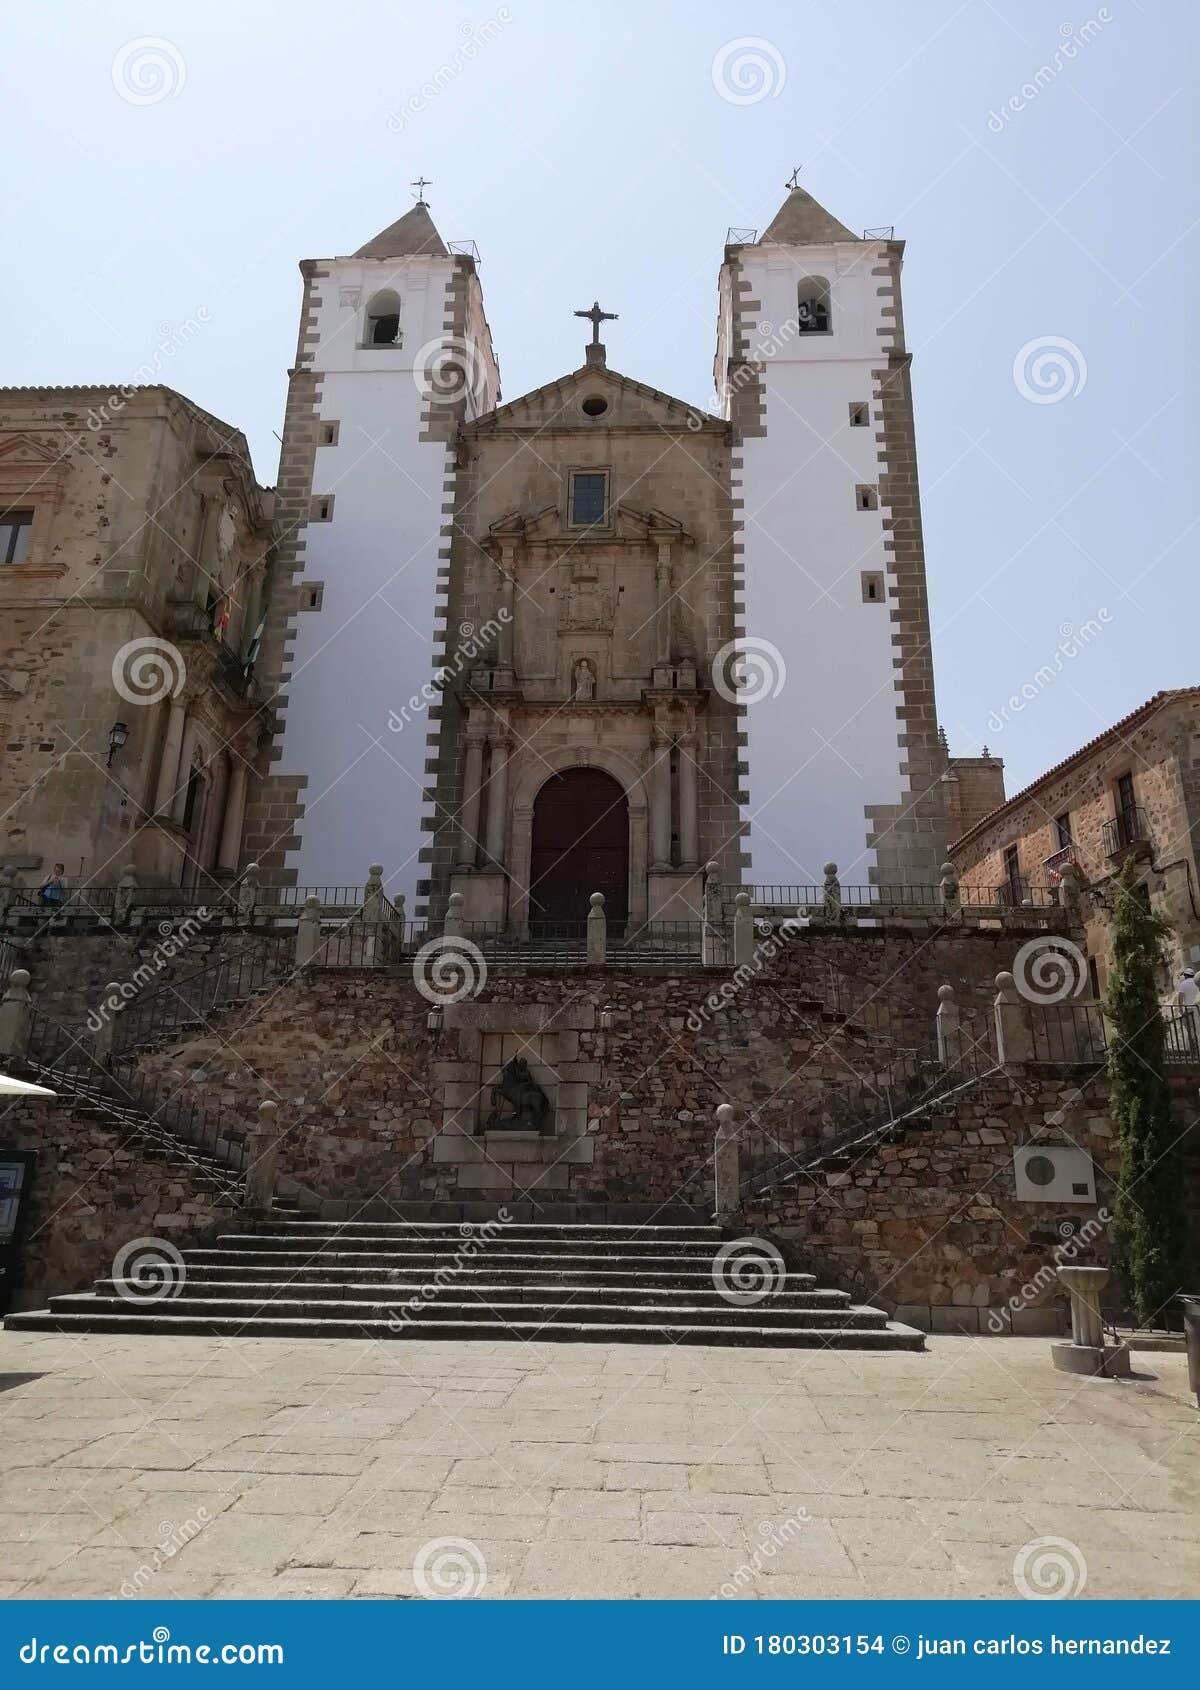 the church of san francisco javier, also known as the iglesia de la preciosa sangre, cÃÂ¡ceres, extremadura, spain